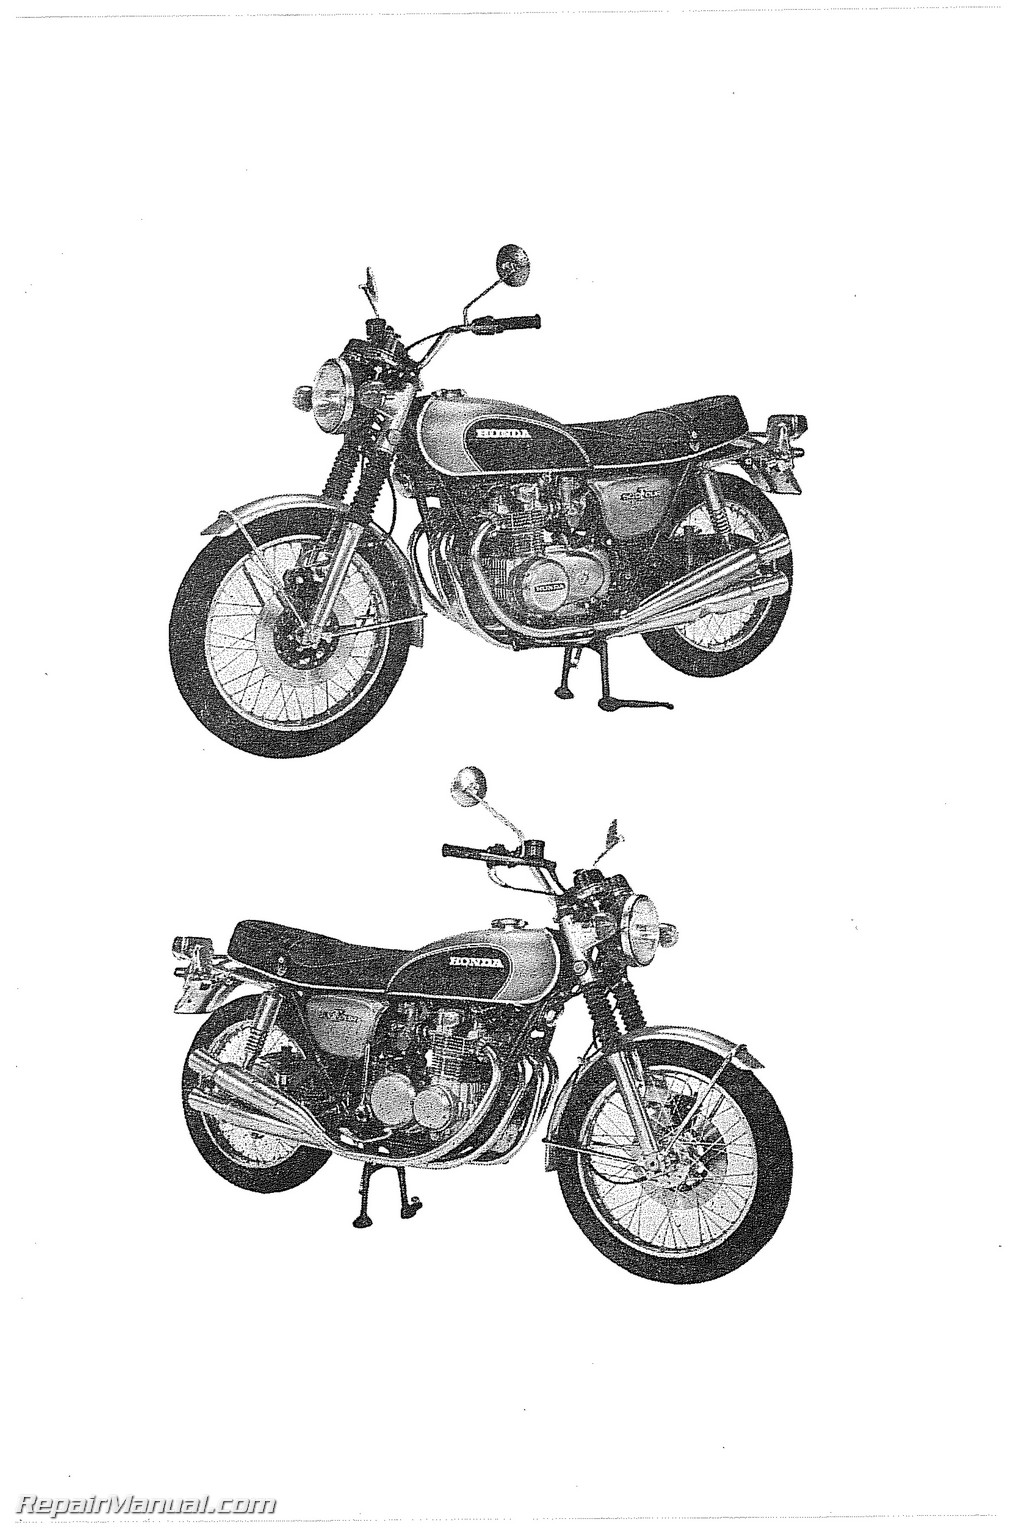 1971 Honda cb500 parts